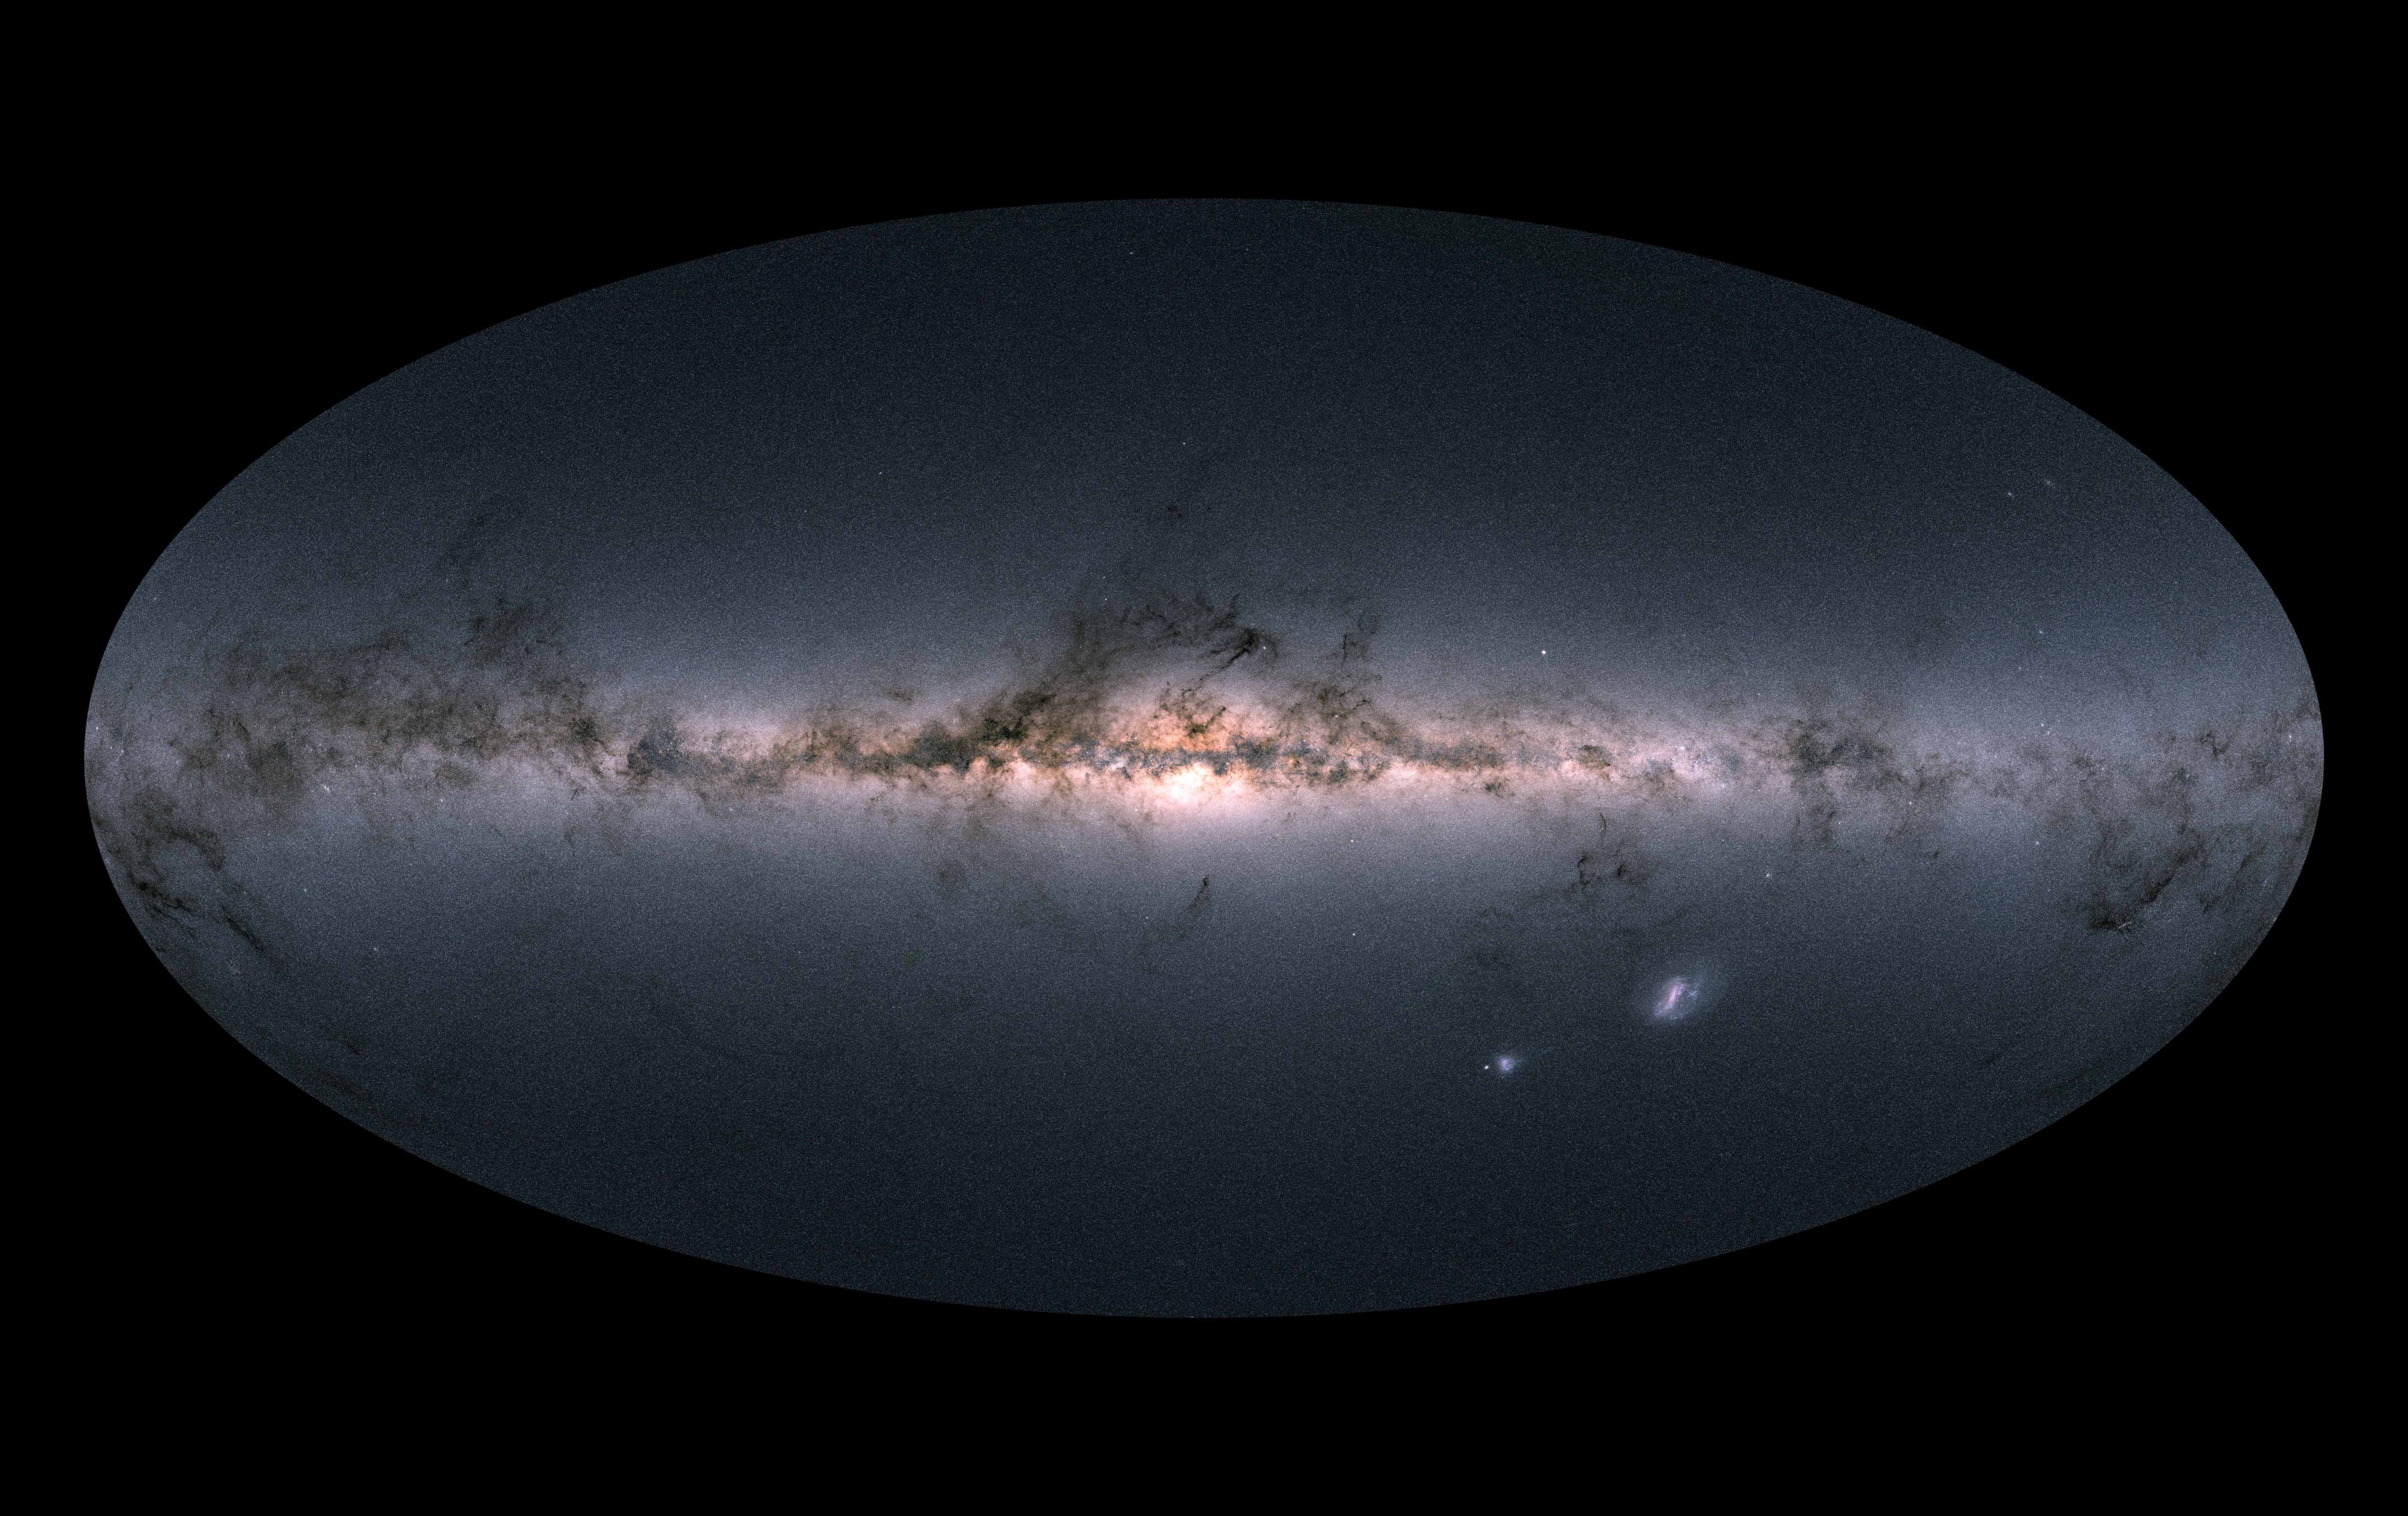 The *Gaia* sky in colour. Credit: ESA/Gaia/DPAC, CC BY-SA 3.0 IGO.